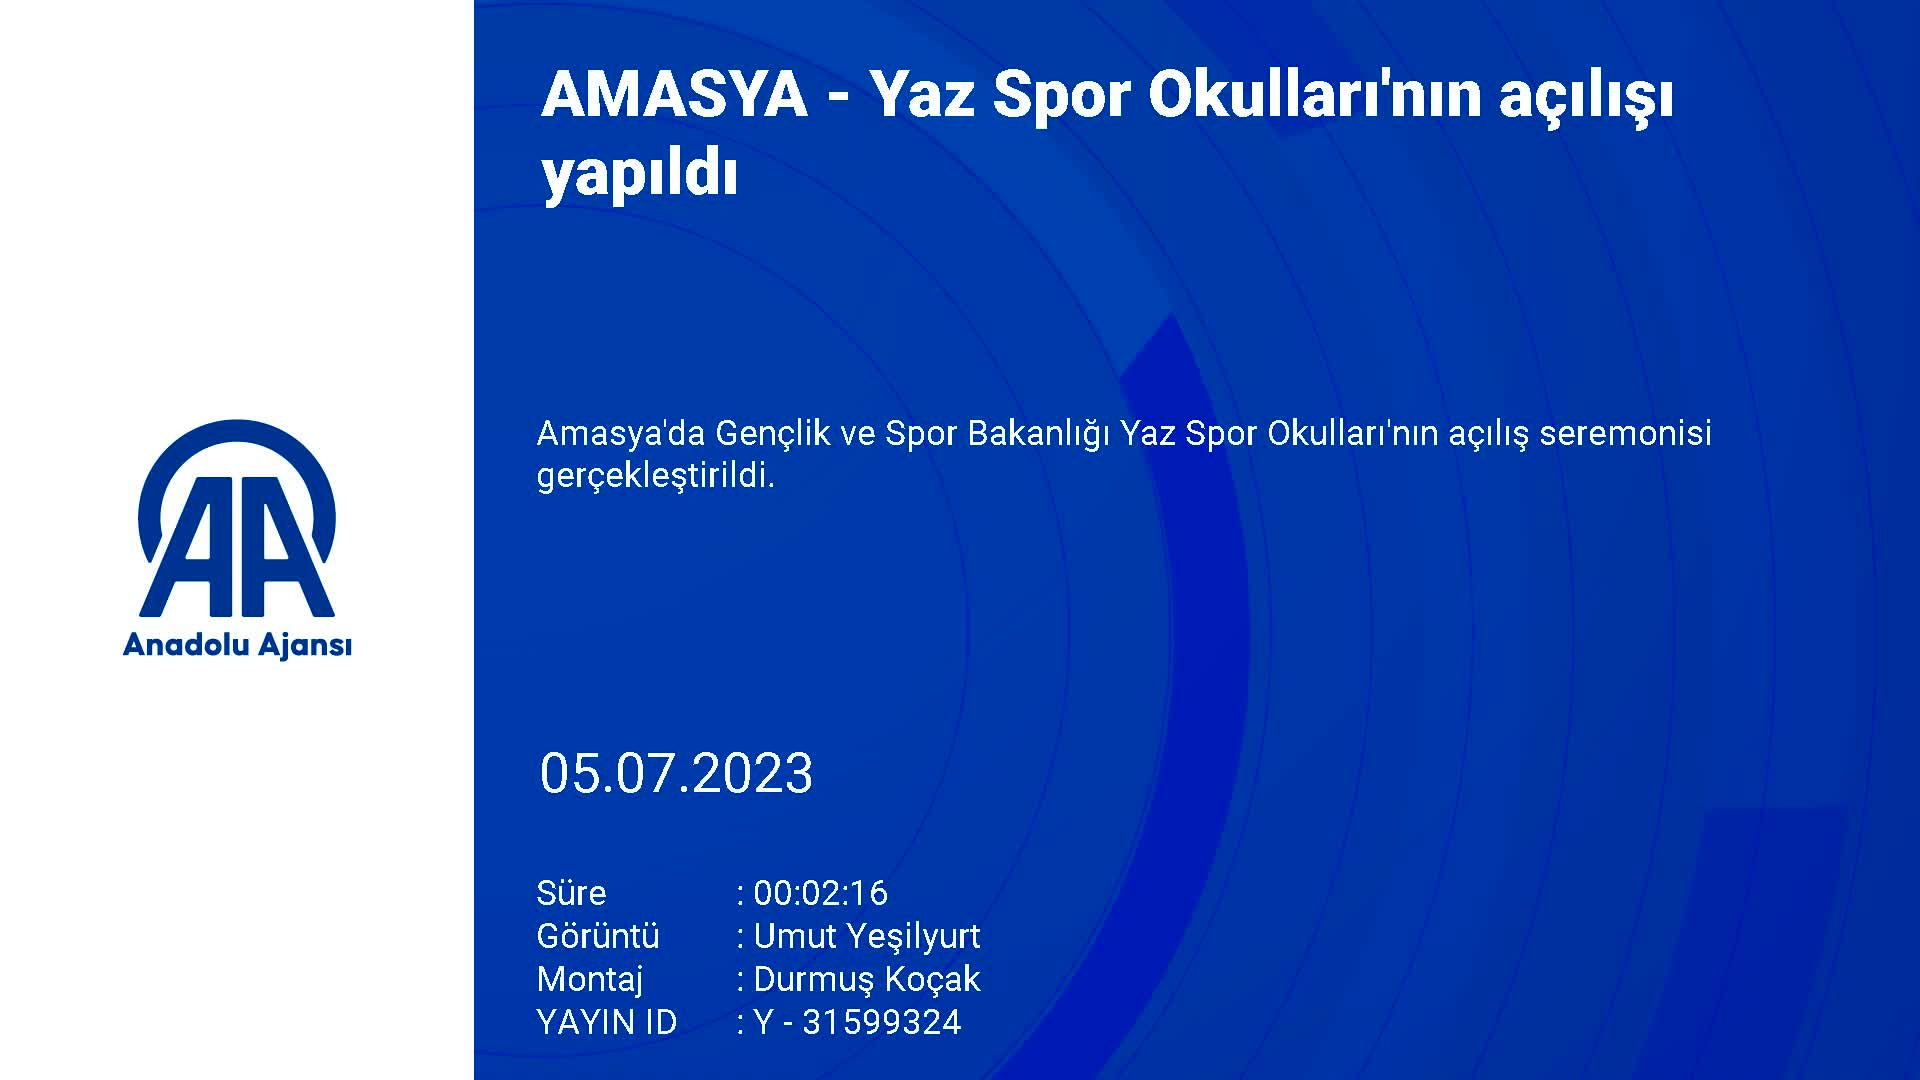 Amasya’da Yaz Spor Okulları’nın açılışı yapıldı